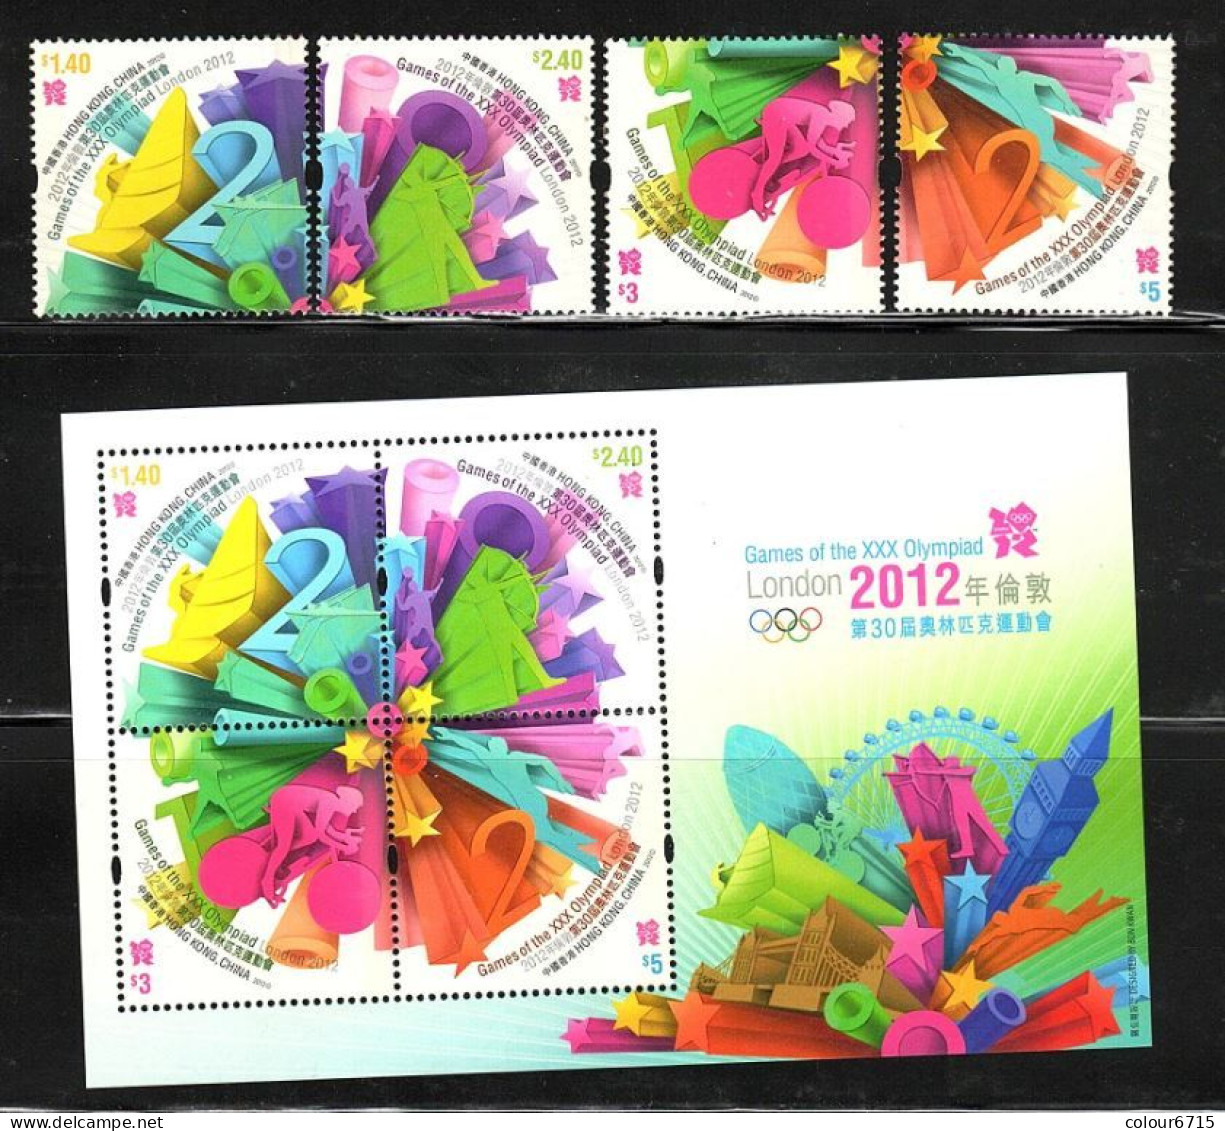 China Hong Kong 2012 Olympic Games - London, UK (stamps 4v+MS/Block) MNH - Ungebraucht